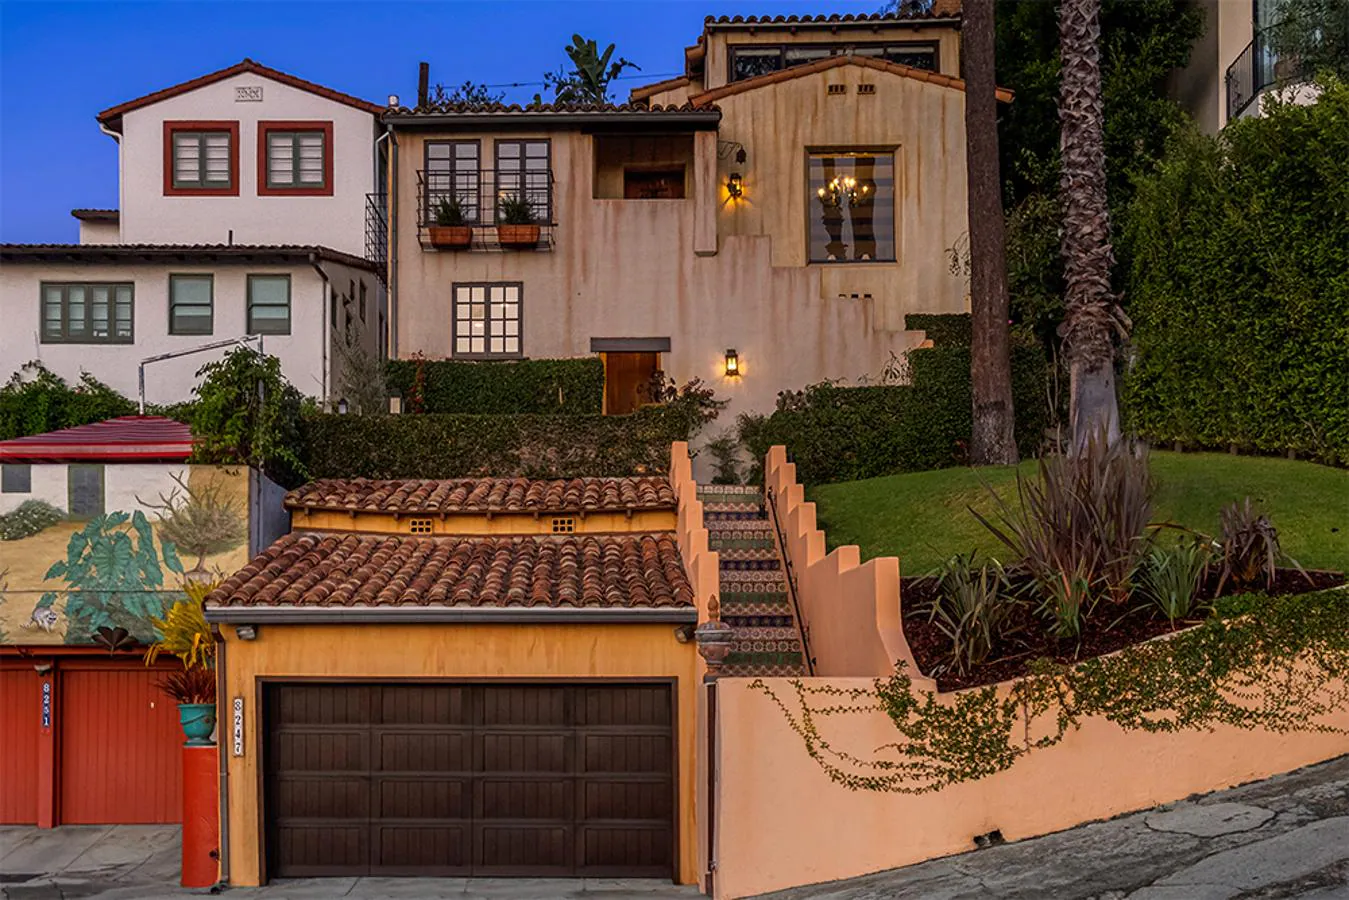 Aaron Paul, vende su casa de estilo español por 2,2 millones de dólares